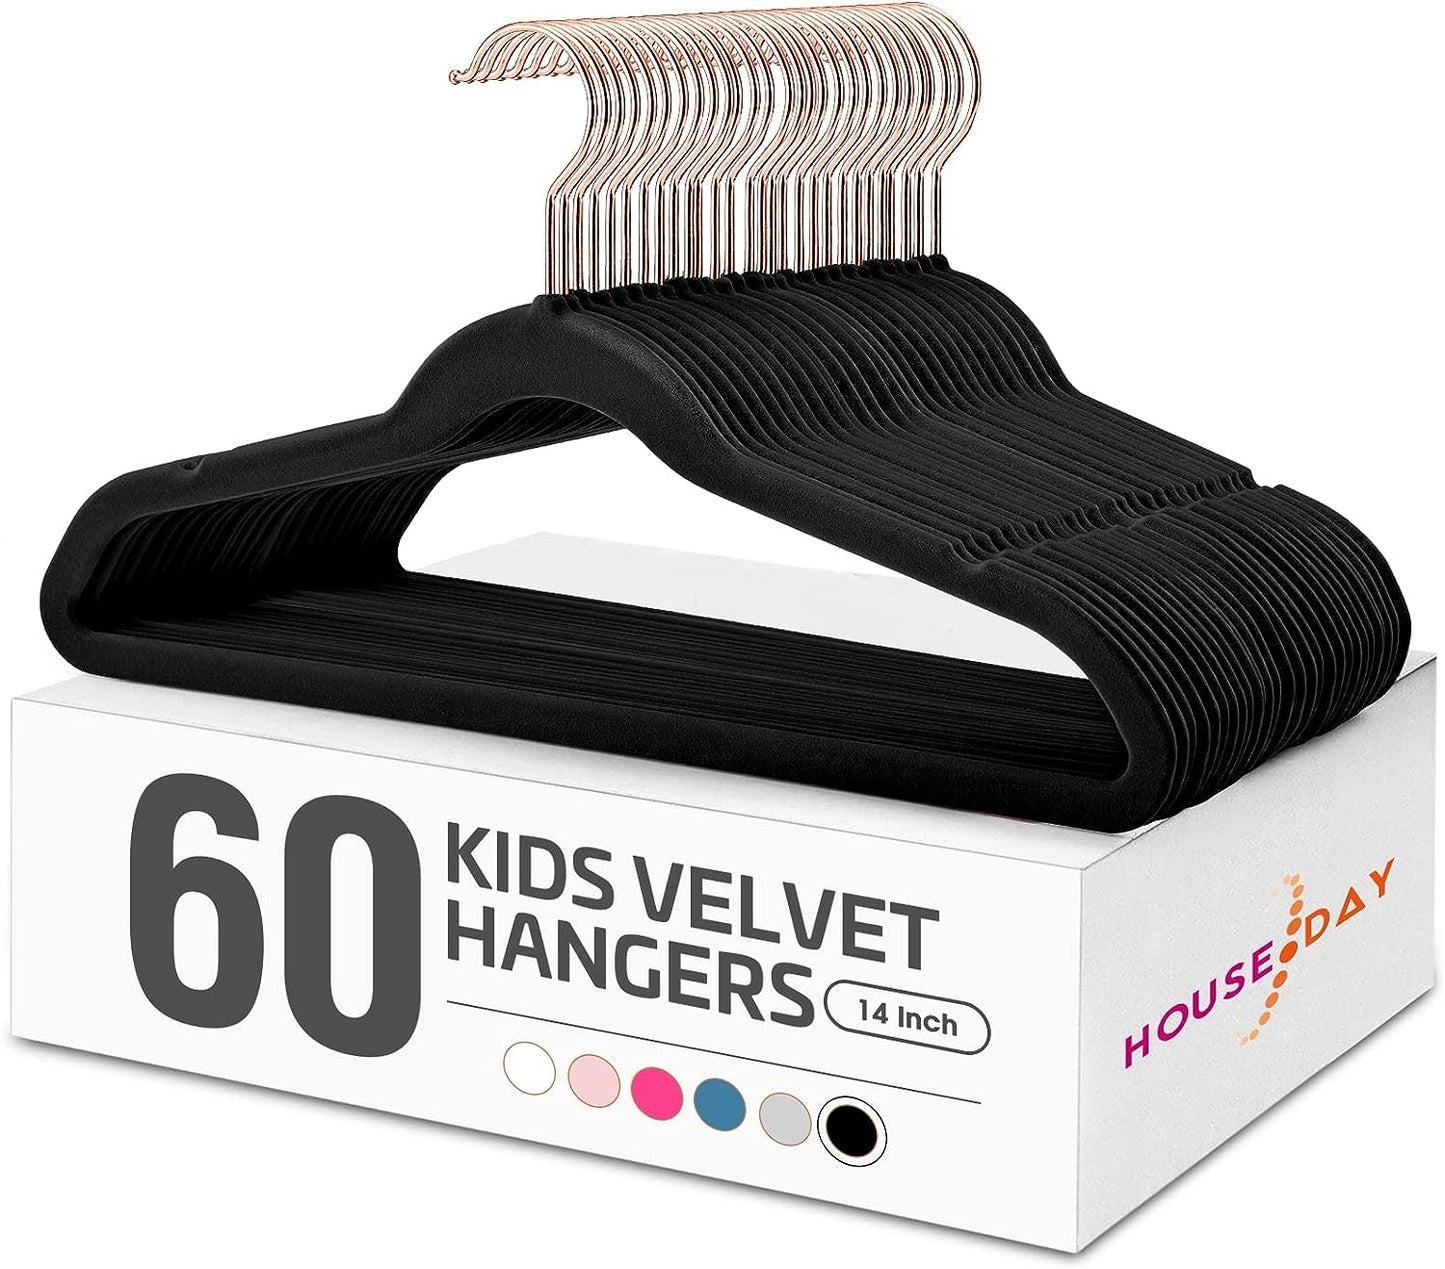 House Day 14 Inch Velvet Kids Hangers Black 60 Pack